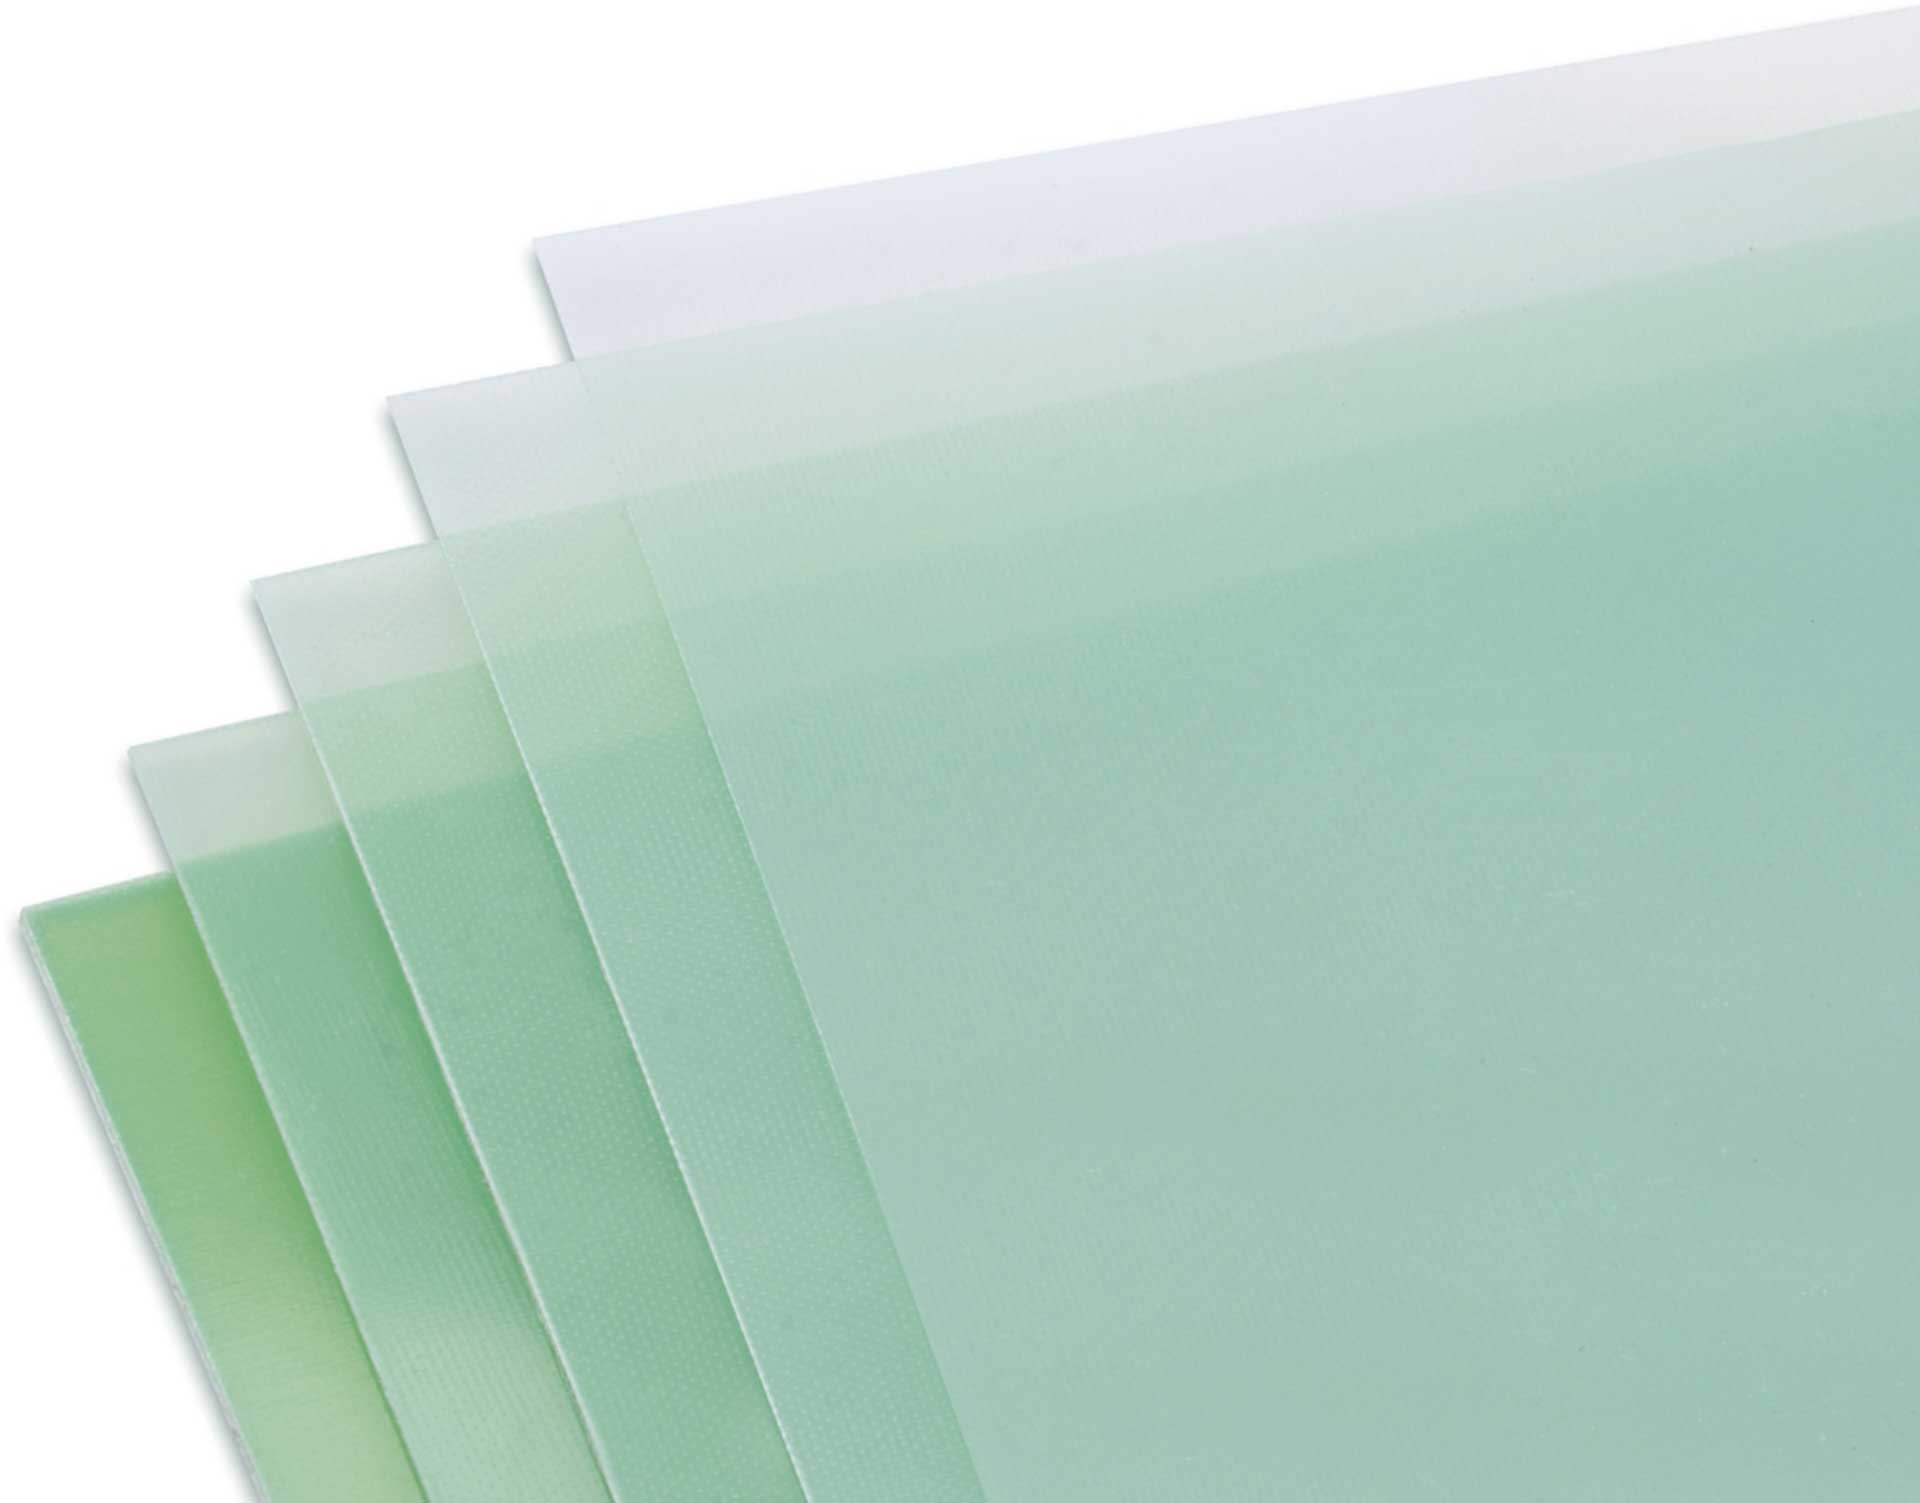 Modellbau Lindinger GFK-Platte 1,5x340x1220mm matt, grünlich transparent